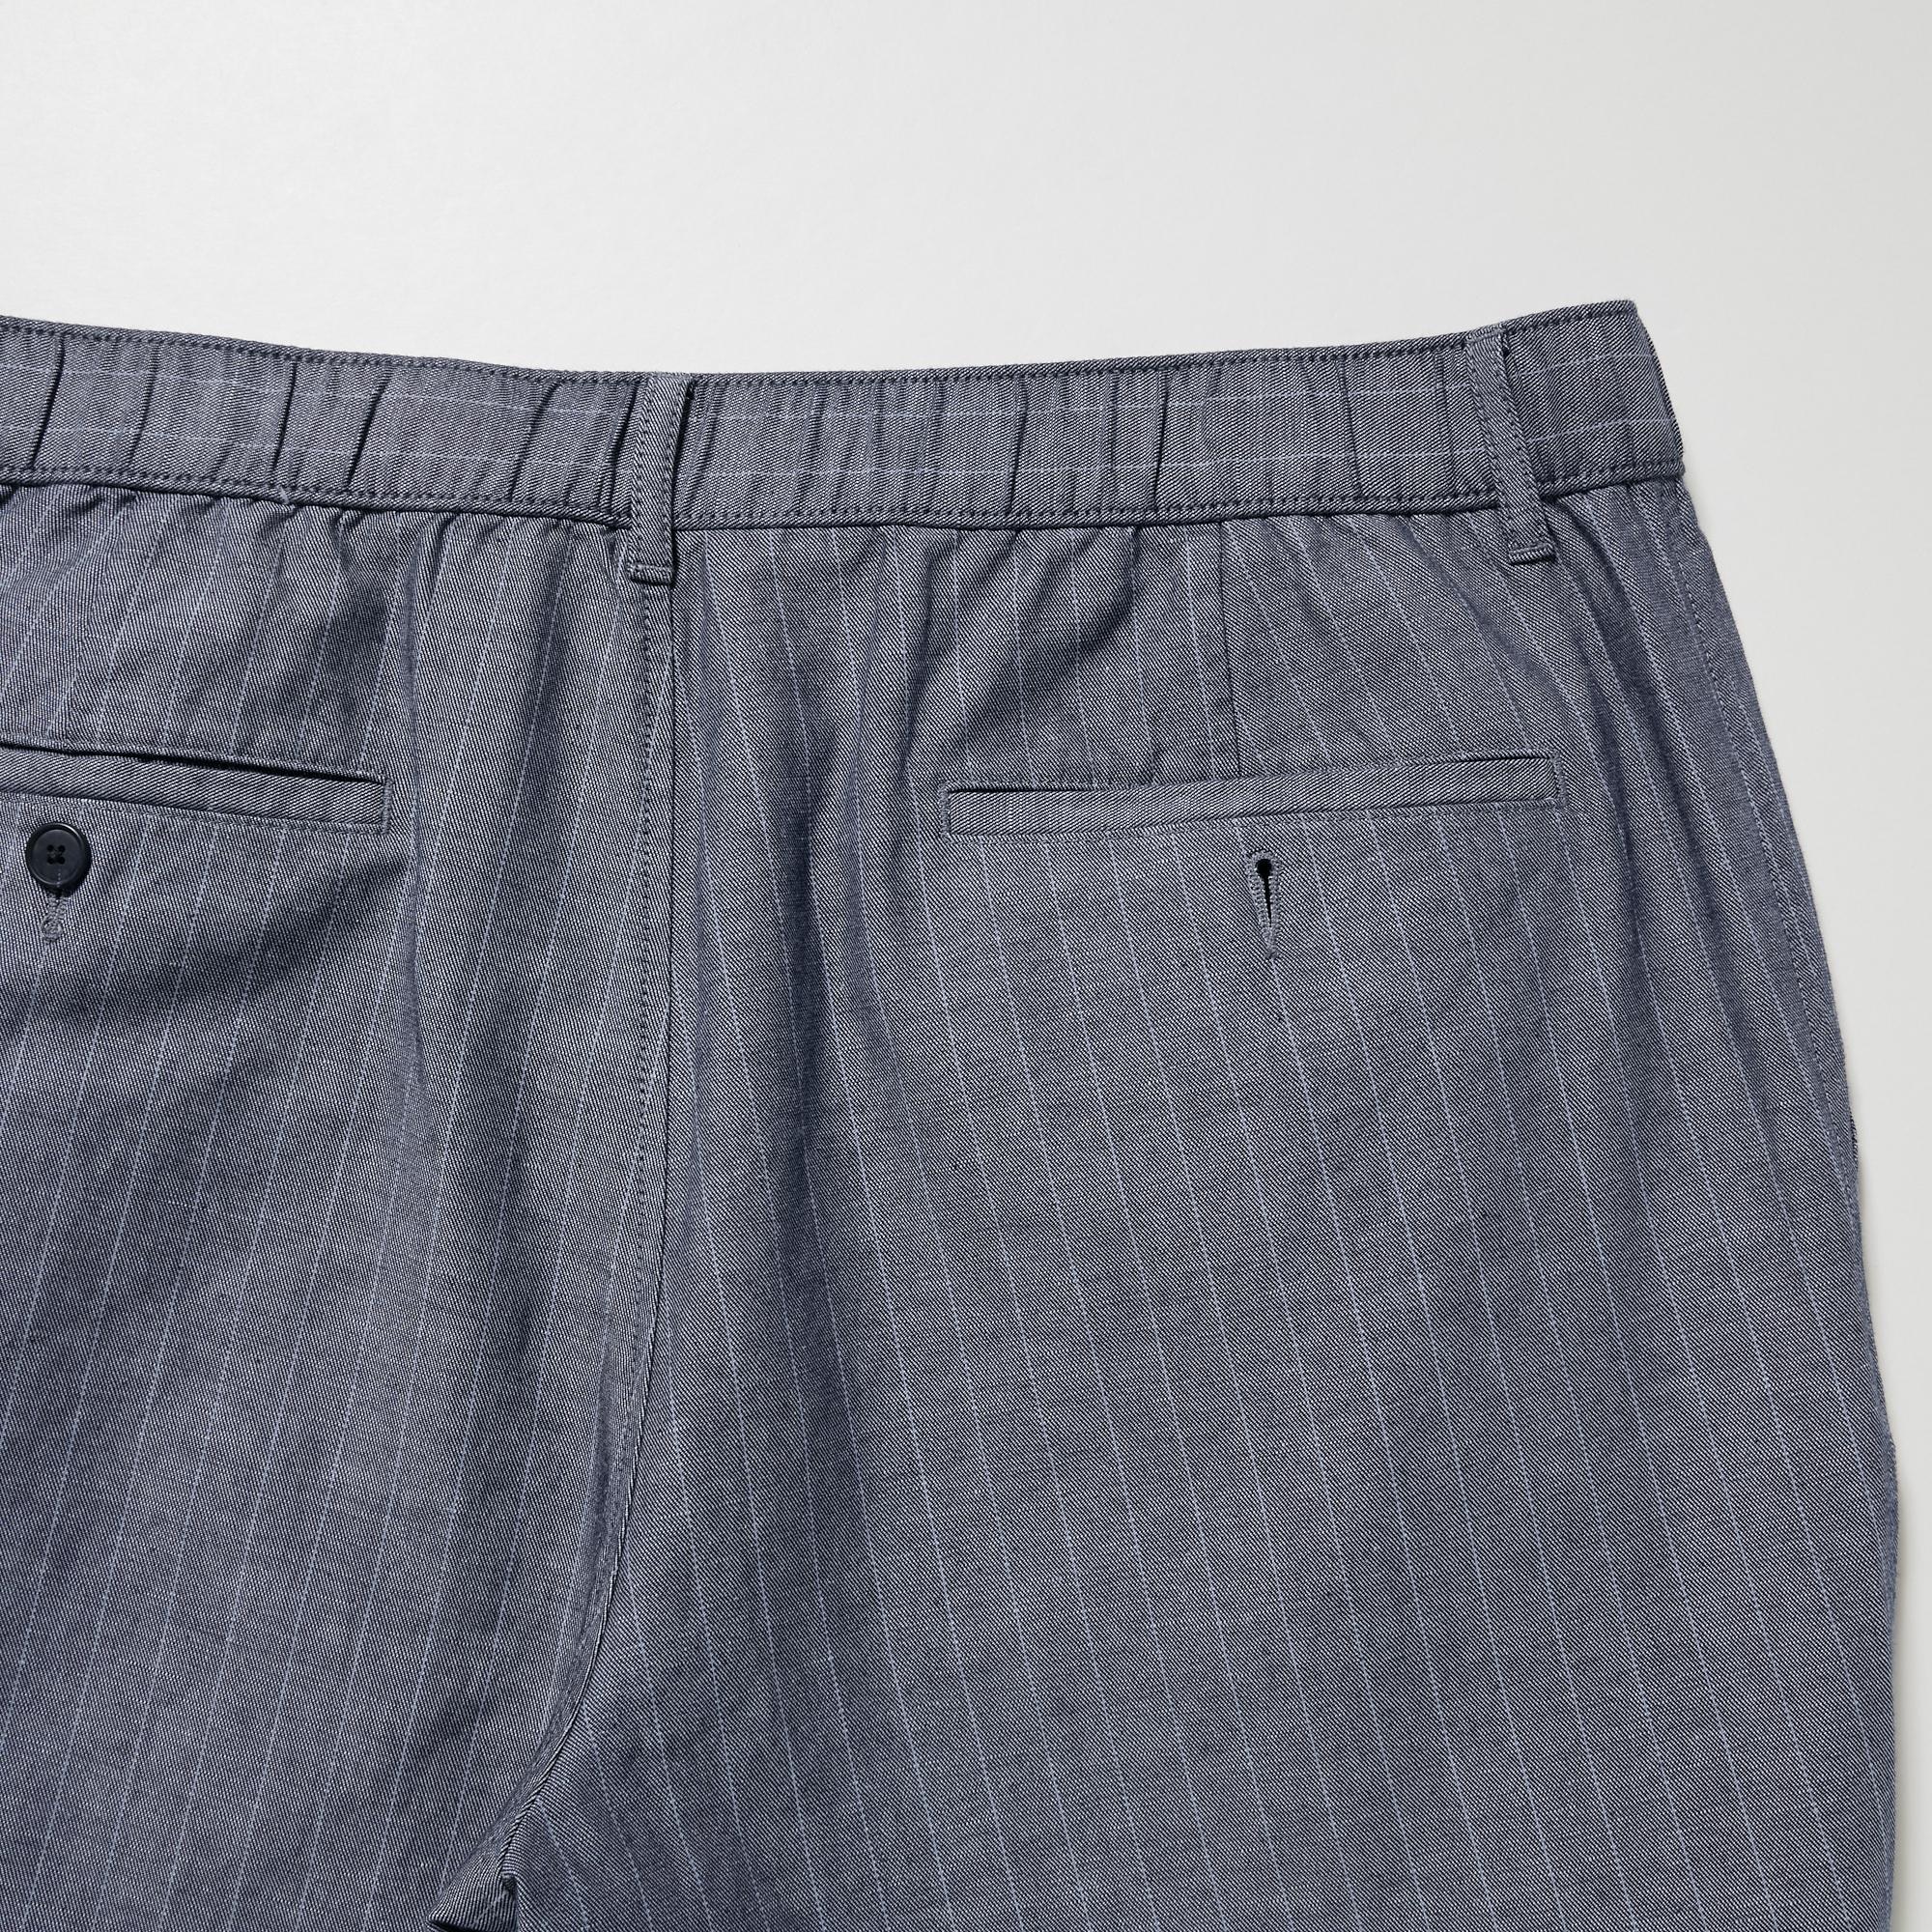 Kona Classic Linen Pant - Grey – Manan